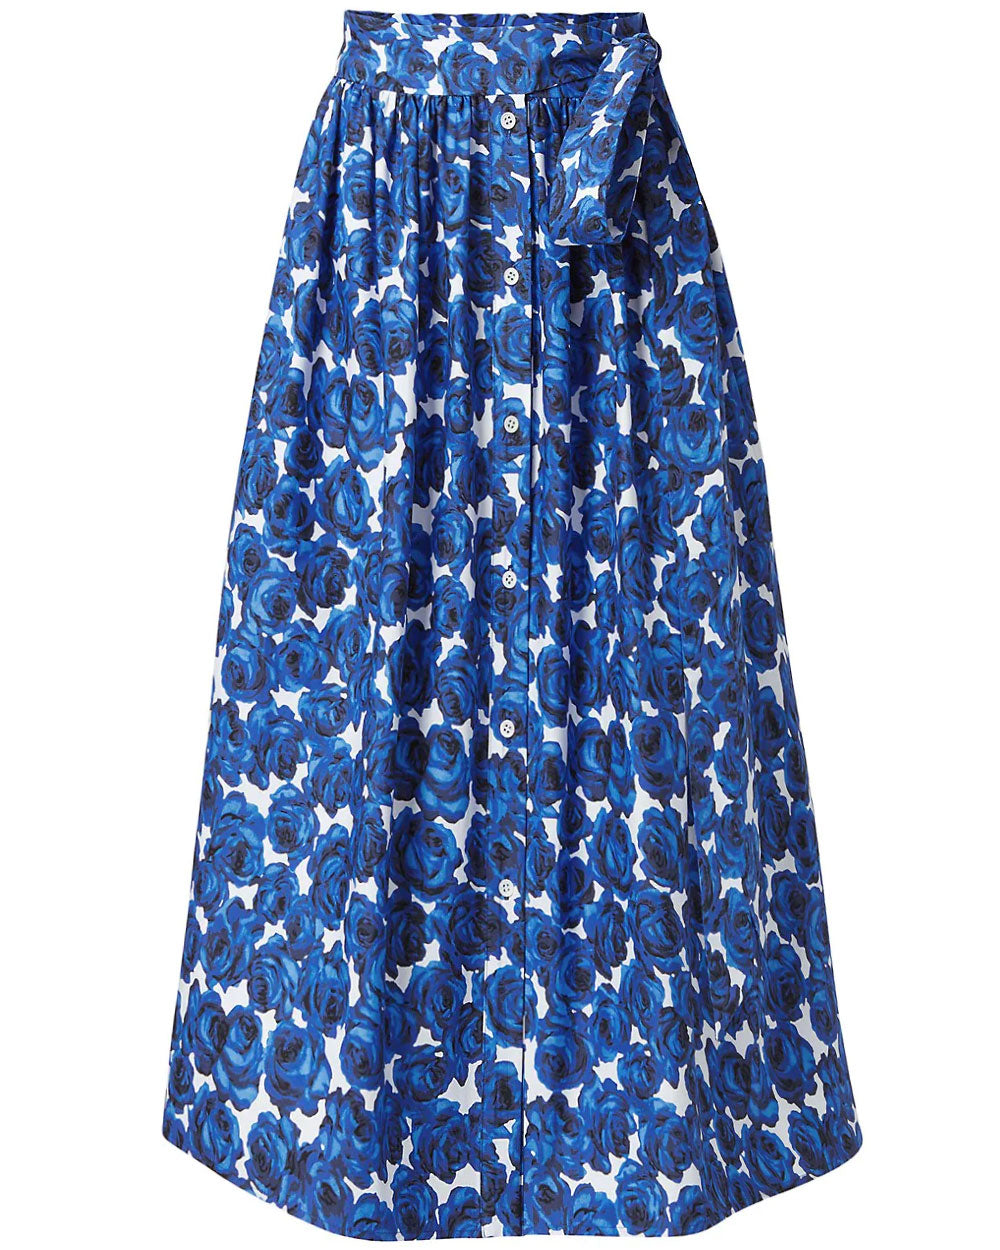 Blue Floral High Waist A Line Skirt